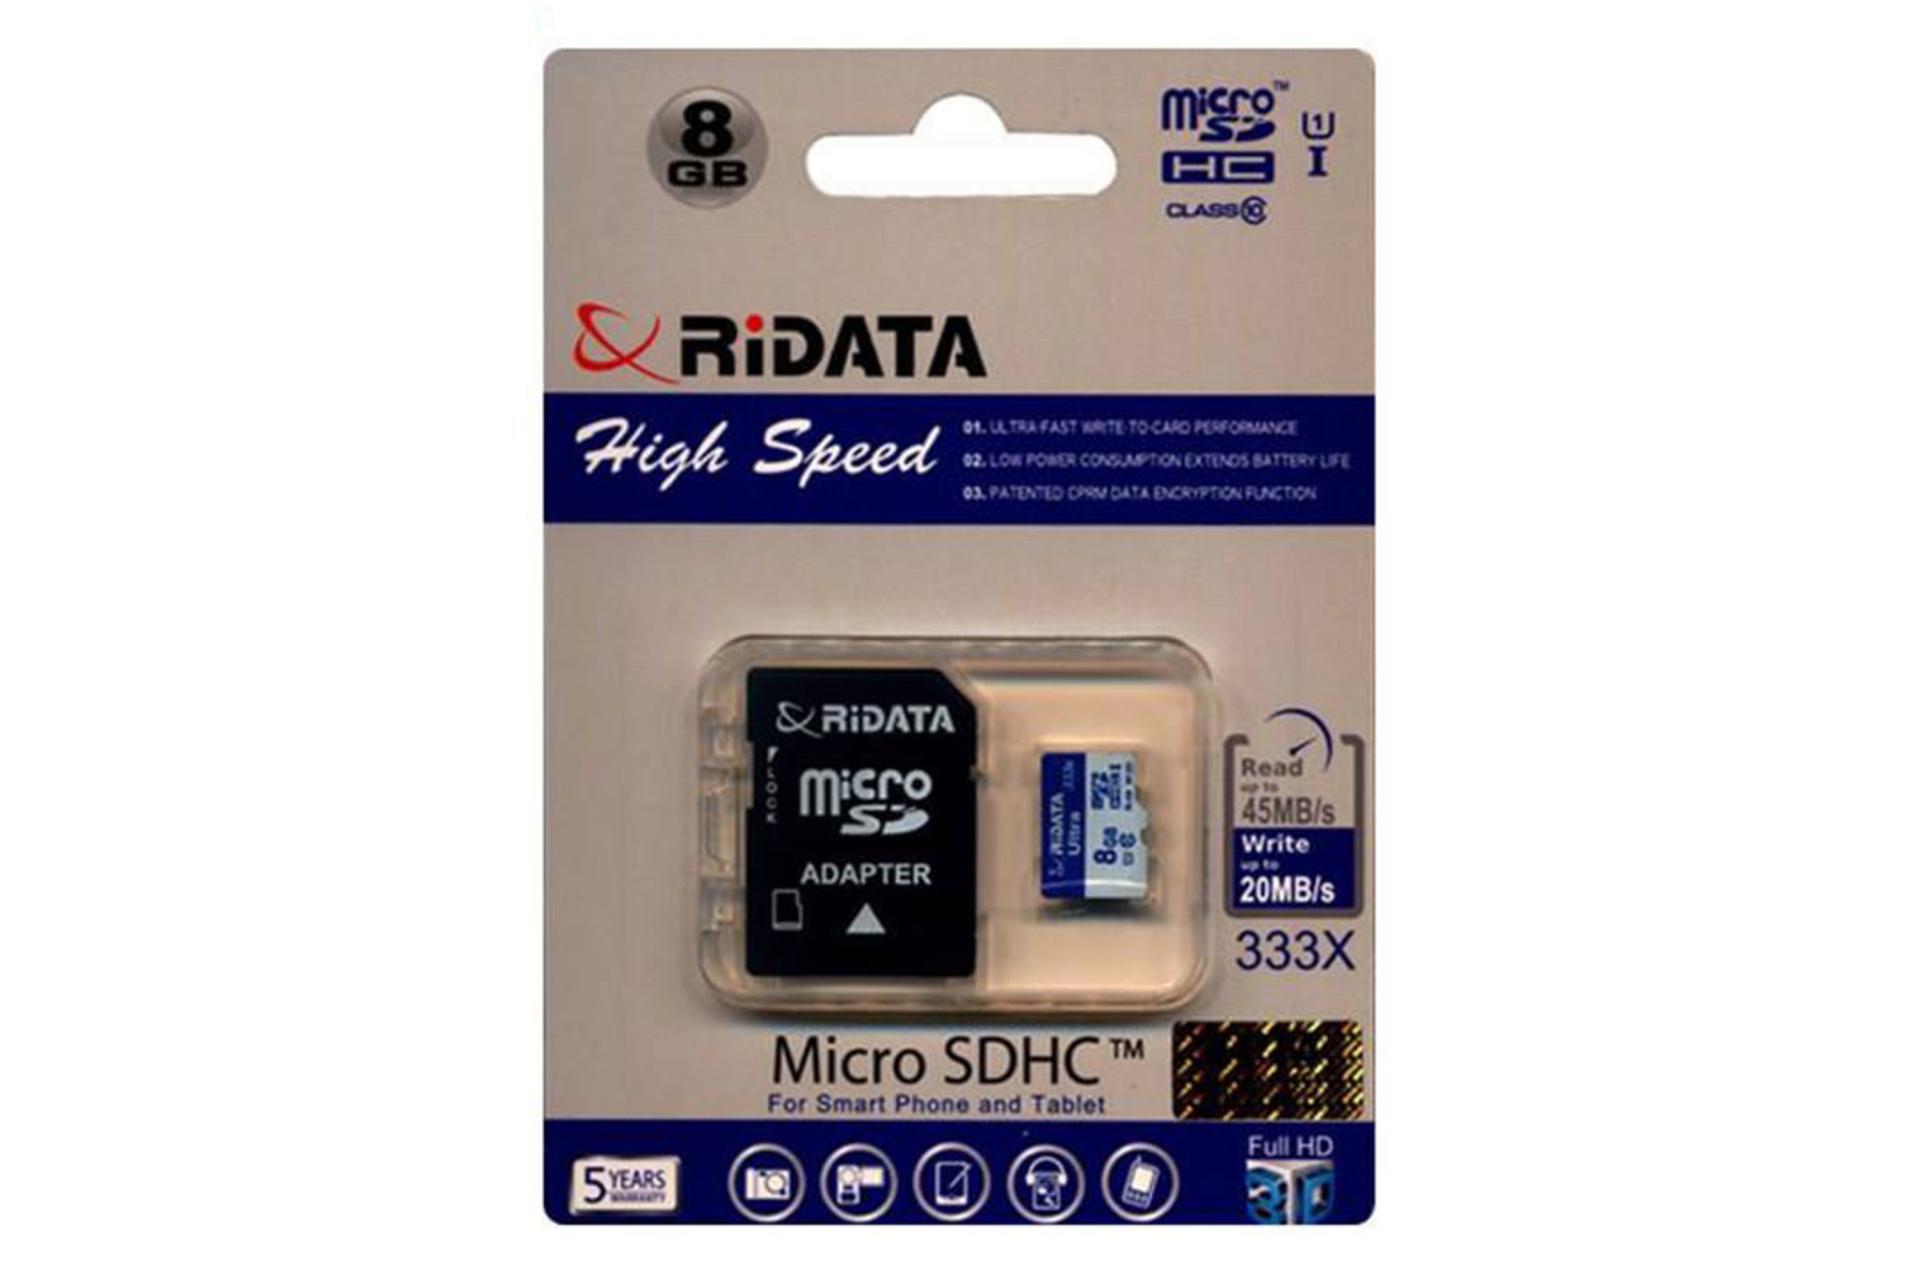 مرجع متخصصين ايران RiDATA High Speed microSDHC Class 10 8GB